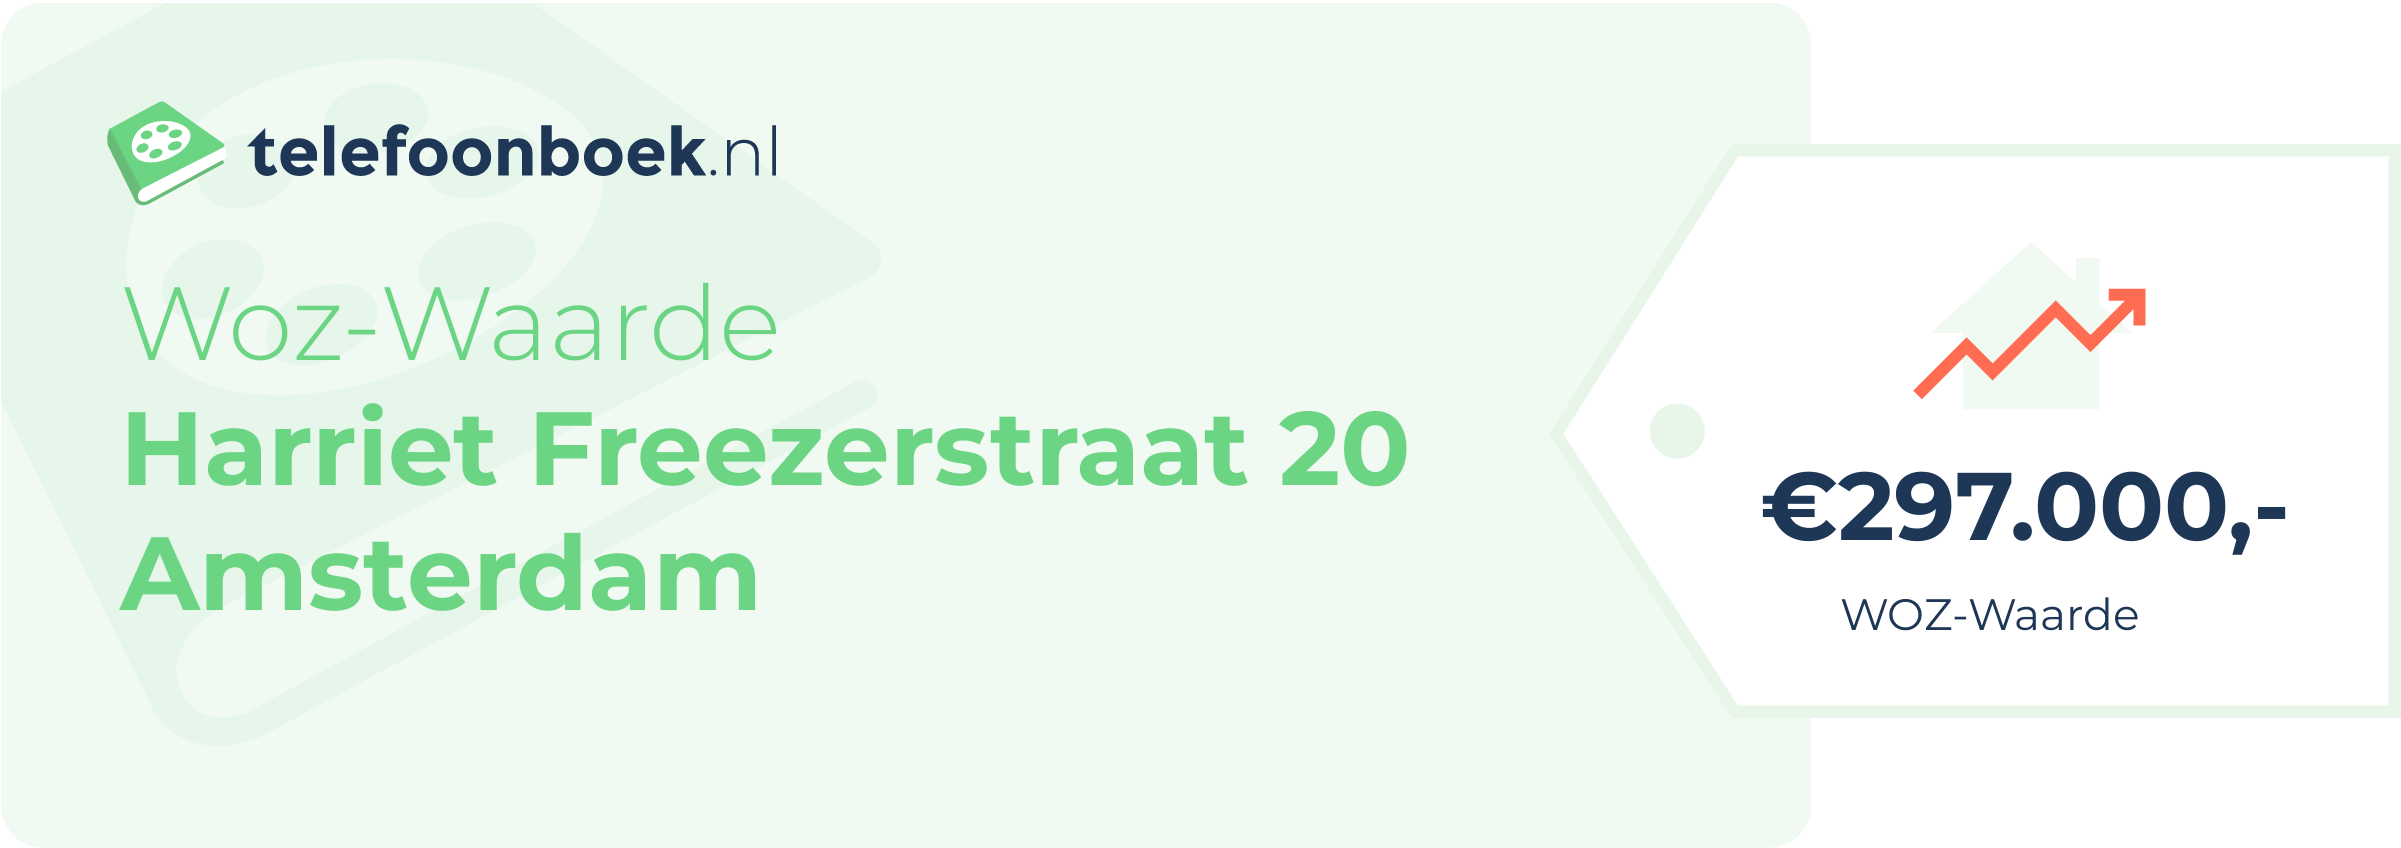 WOZ-waarde Harriet Freezerstraat 20 Amsterdam